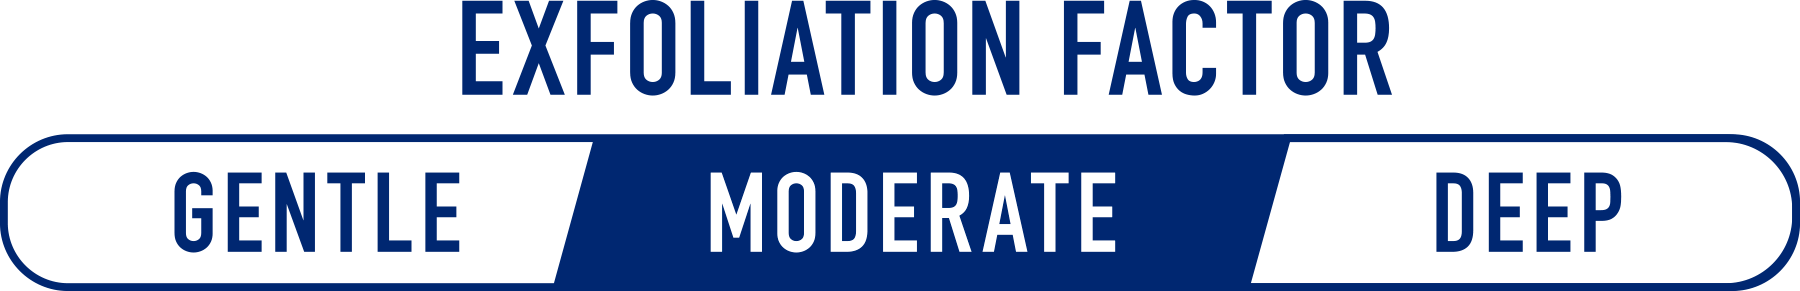 Exfoliation Moderate